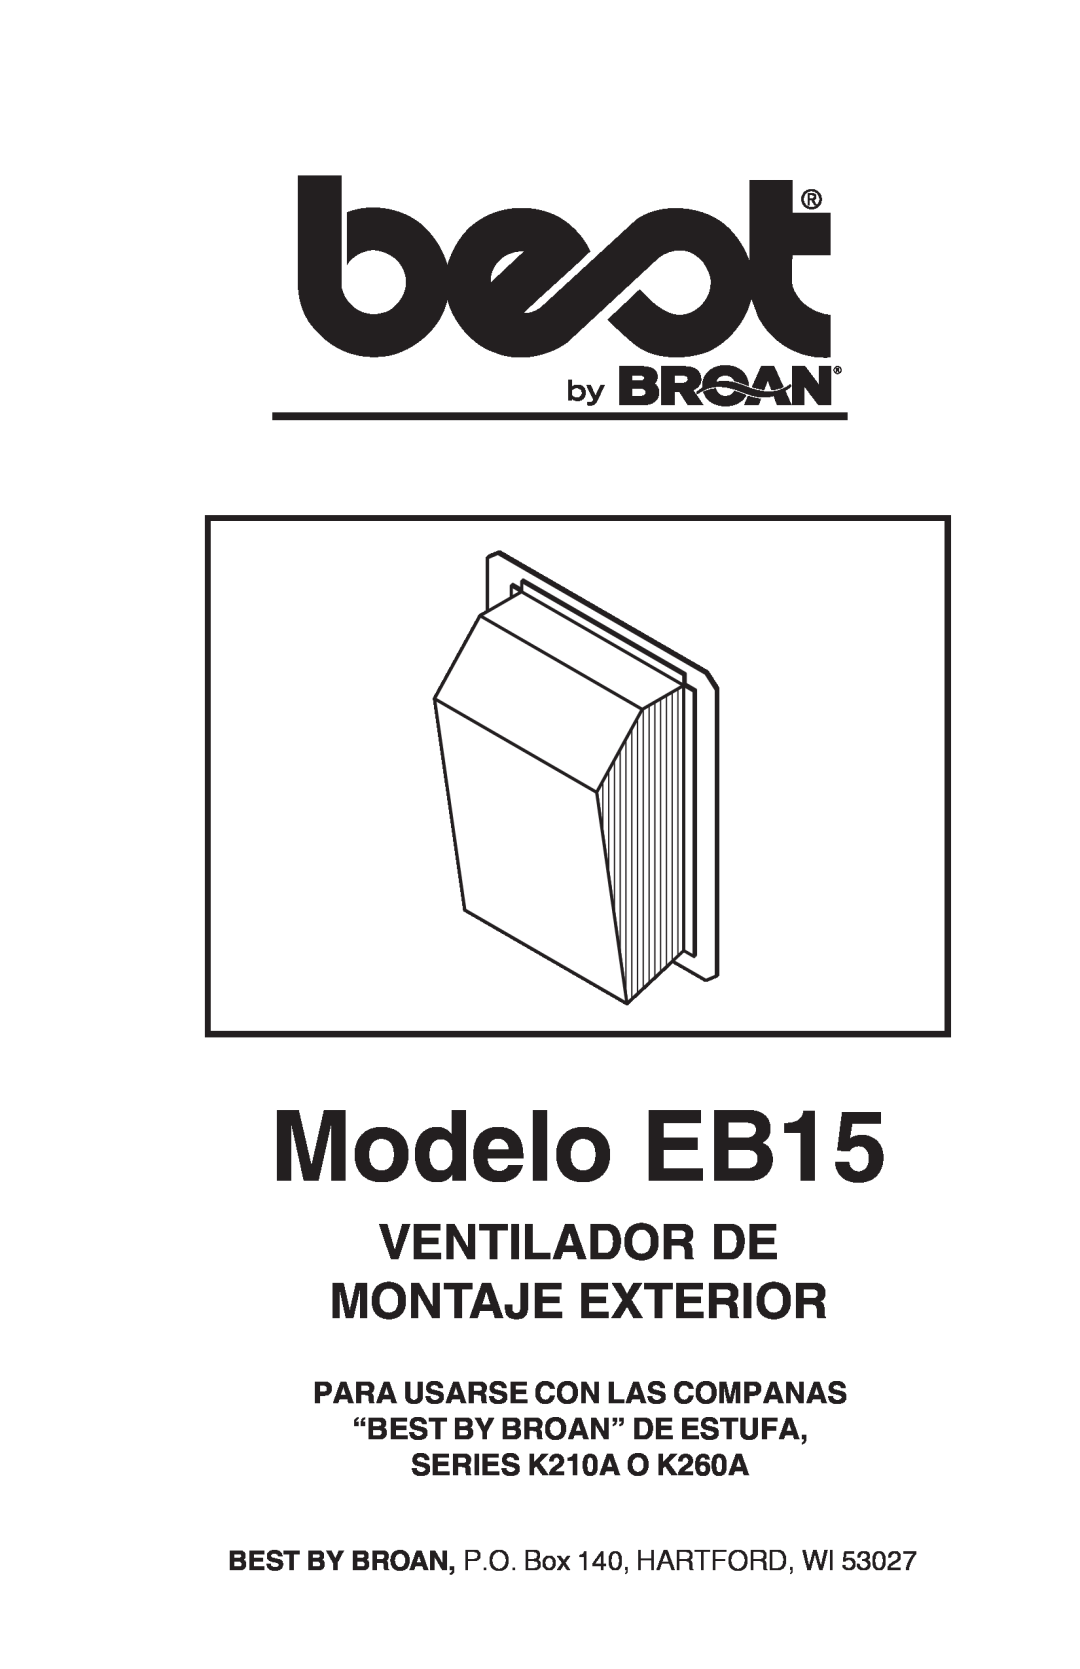 Broan manual Modelo EB15, Ventilador De Montaje Exterior, Para Usarse Con Las Companas “Best By Broan” De Estufa 